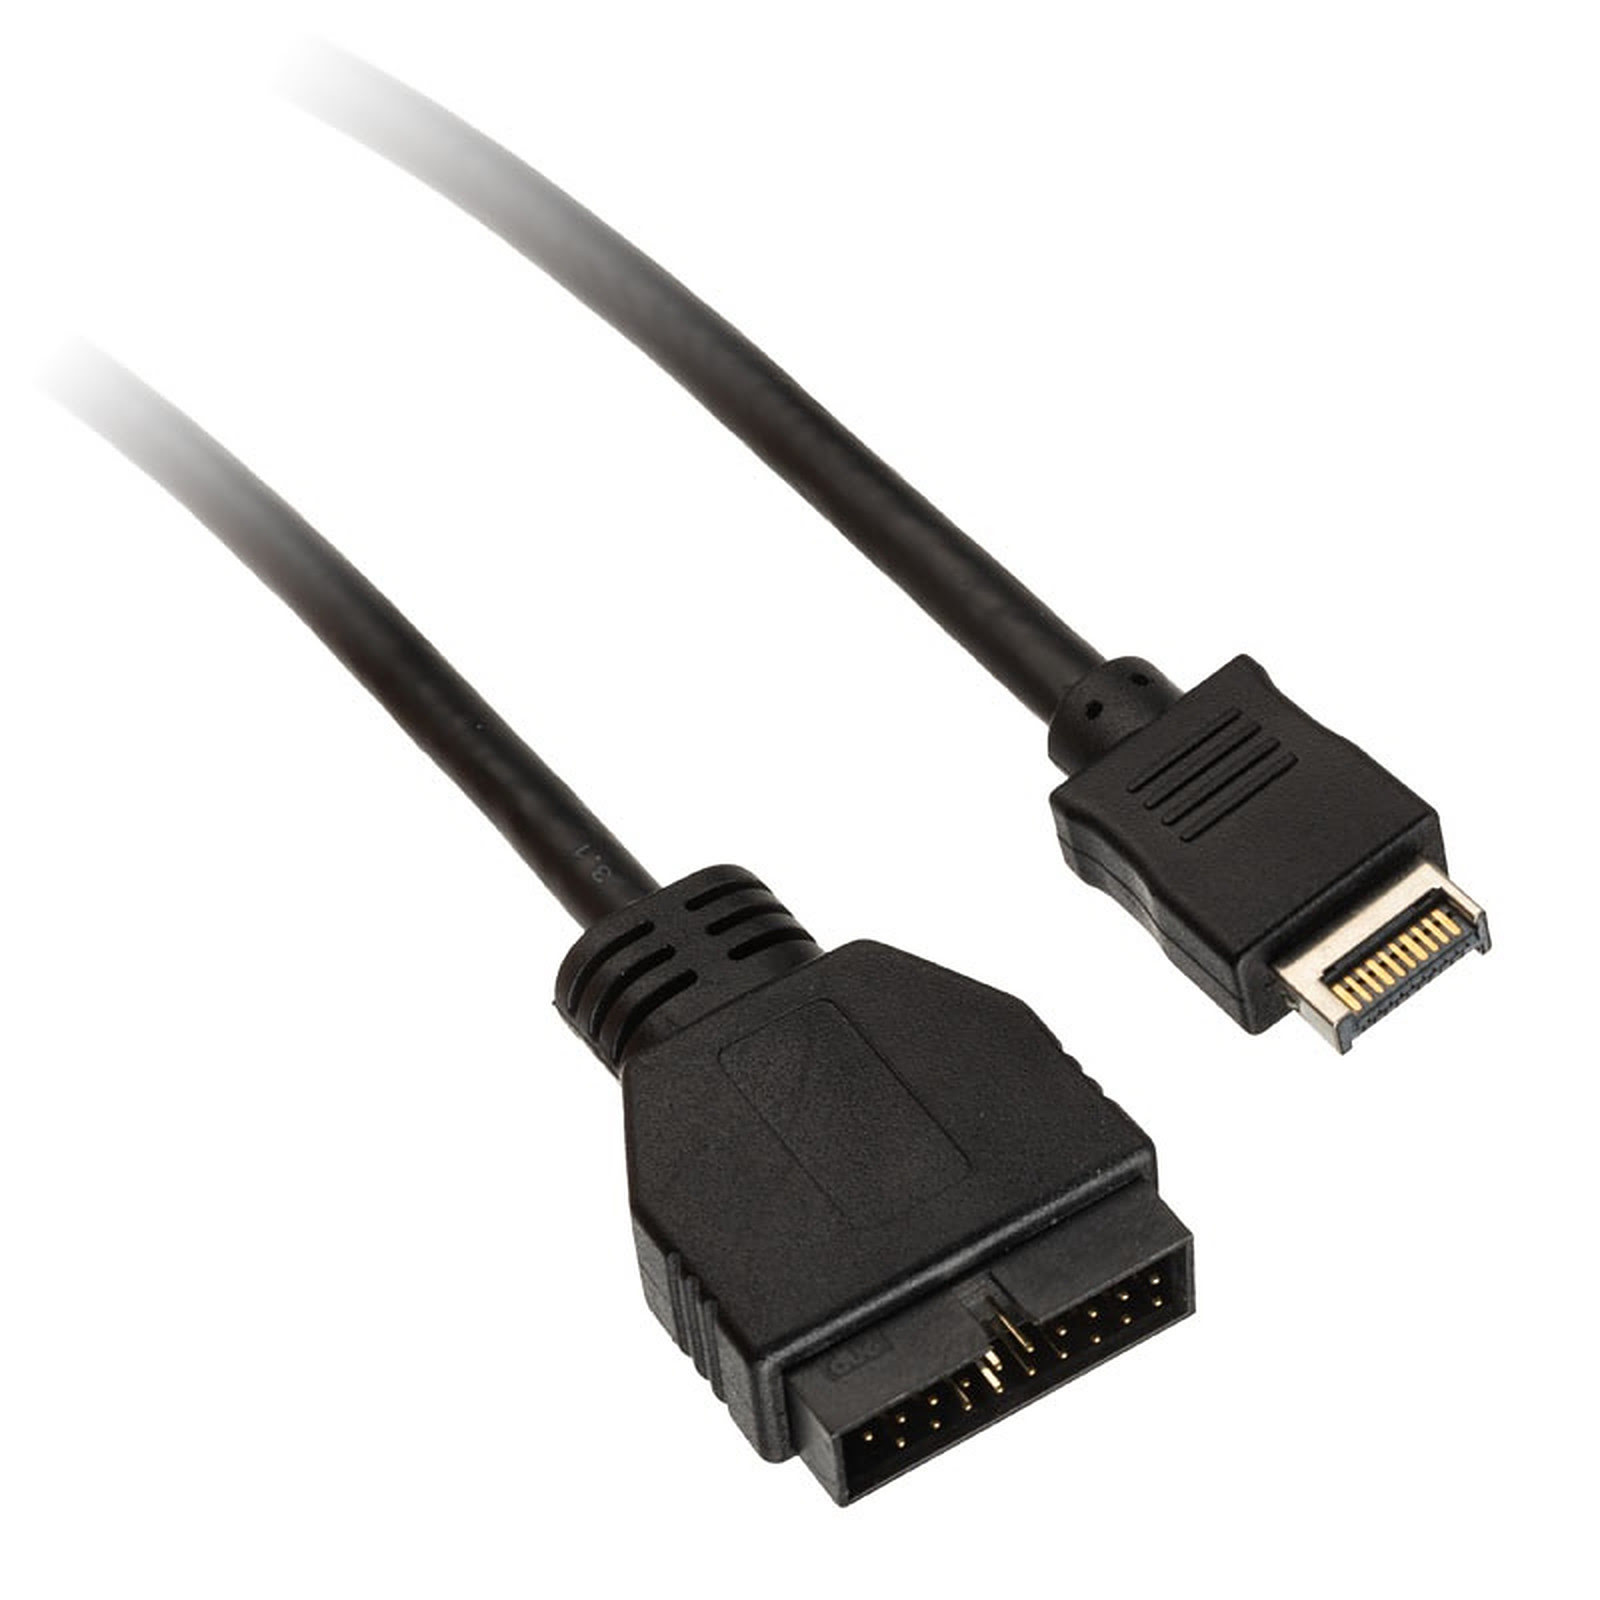 GG 18037: Adaptateur prise USB 3.1 C > port A, lot de 2 chez